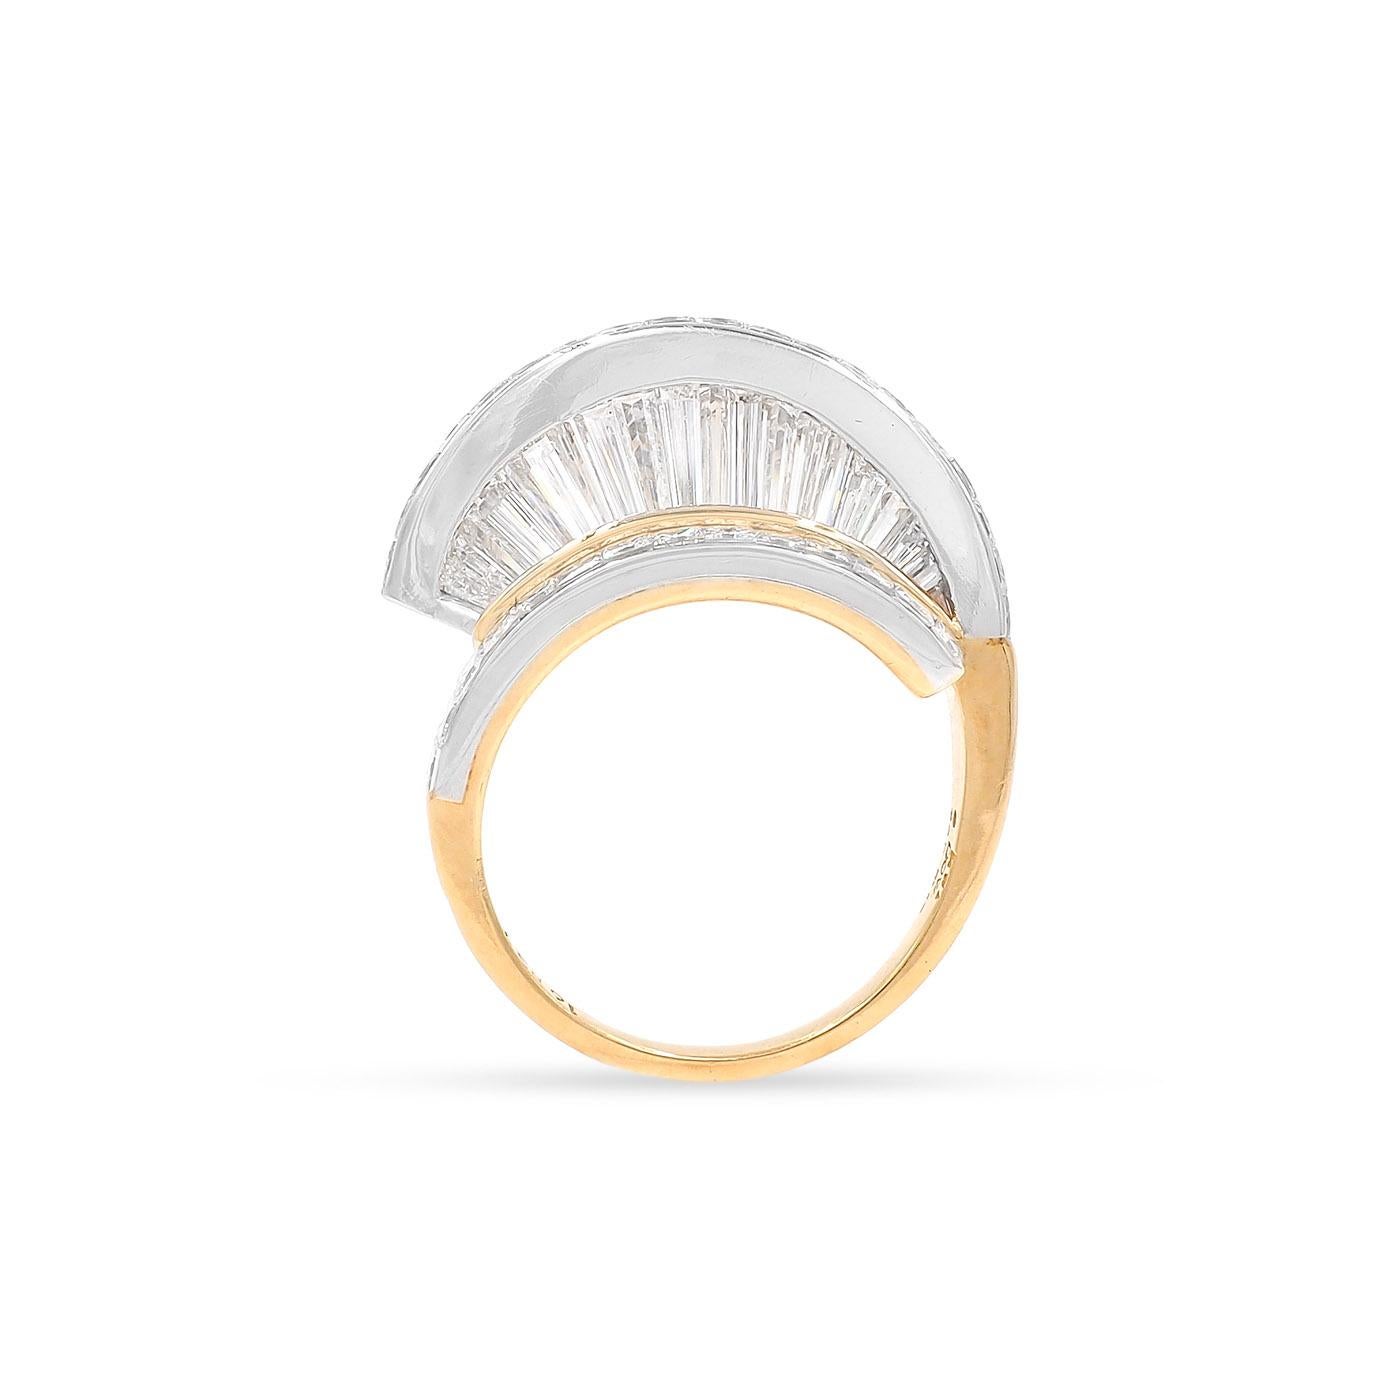 Vintage Baguette Cut & Princess Cut Diamond 'Fan' Ring Set by MWI Eloquence For Sale 3